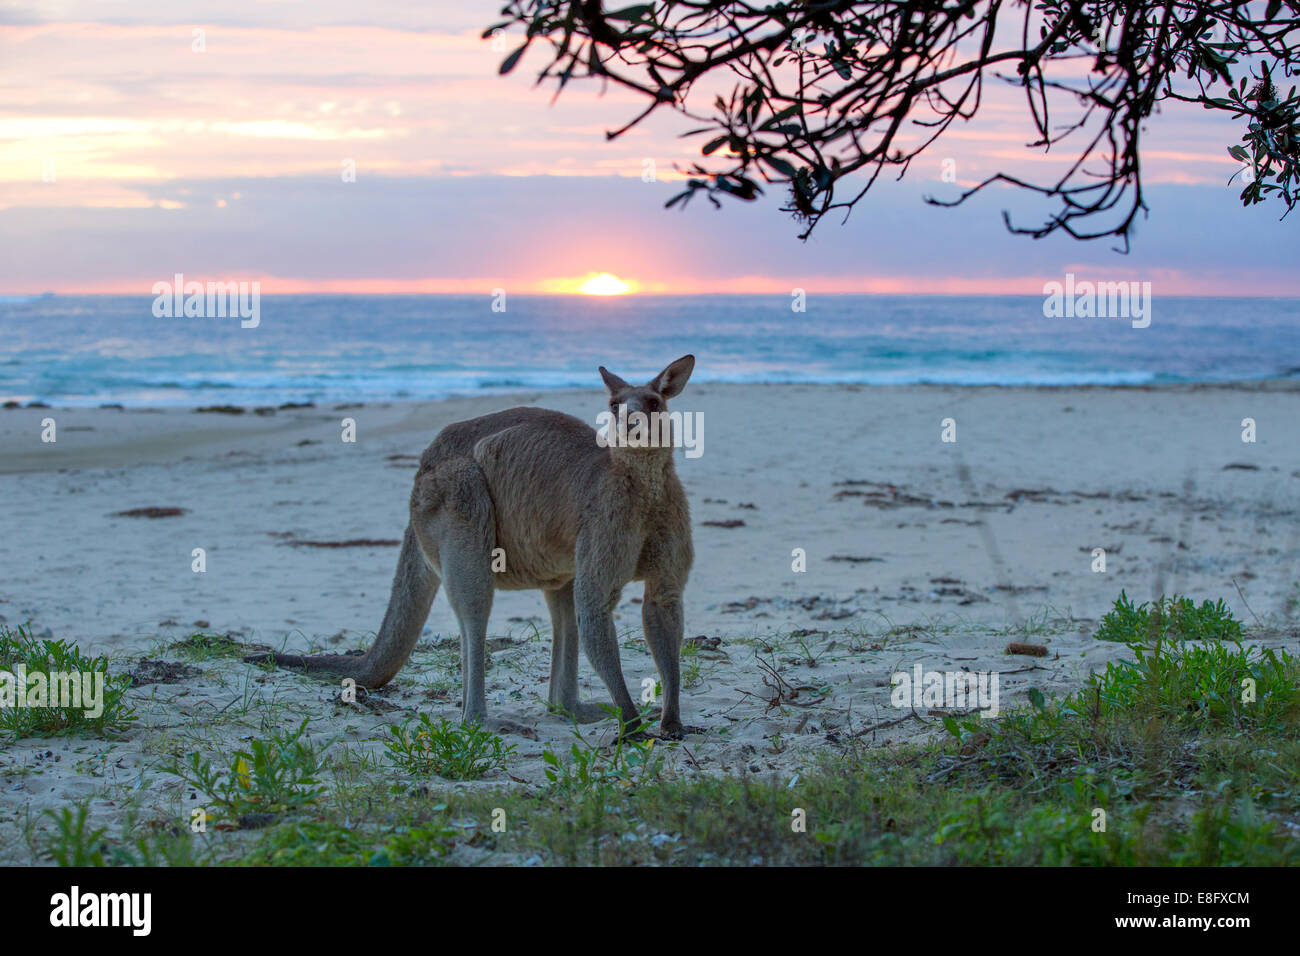 Kangaroo beach, Australie Banque D'Images